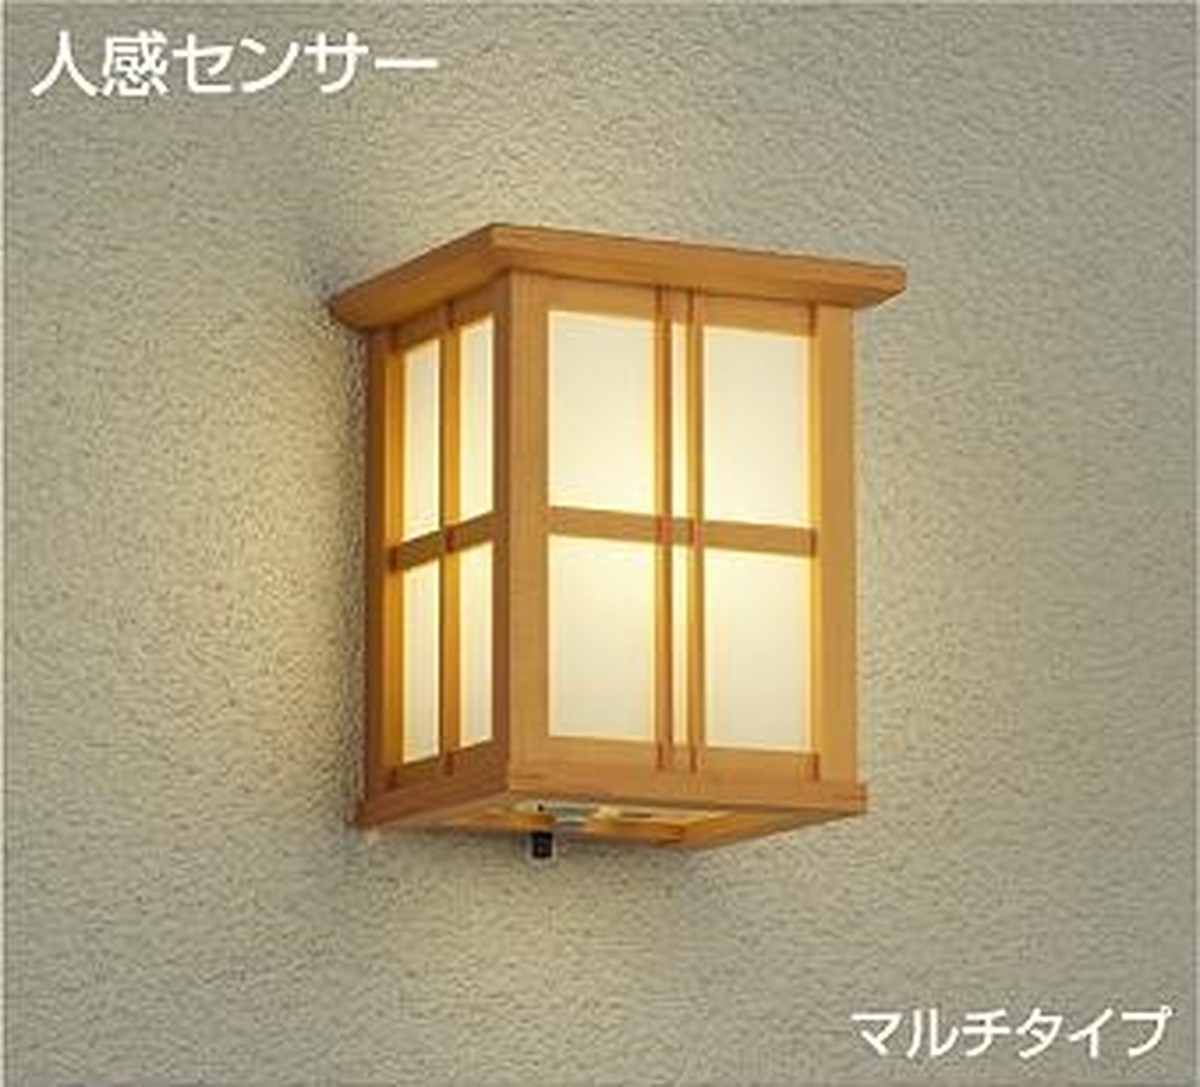 和式・和風邸宅向けの人感センサー付き防雨形玄関灯（ポーチライト）マルチ型です。 | おしゃれ・かわいい・レトロ・和風・お店向き「インテリア照明